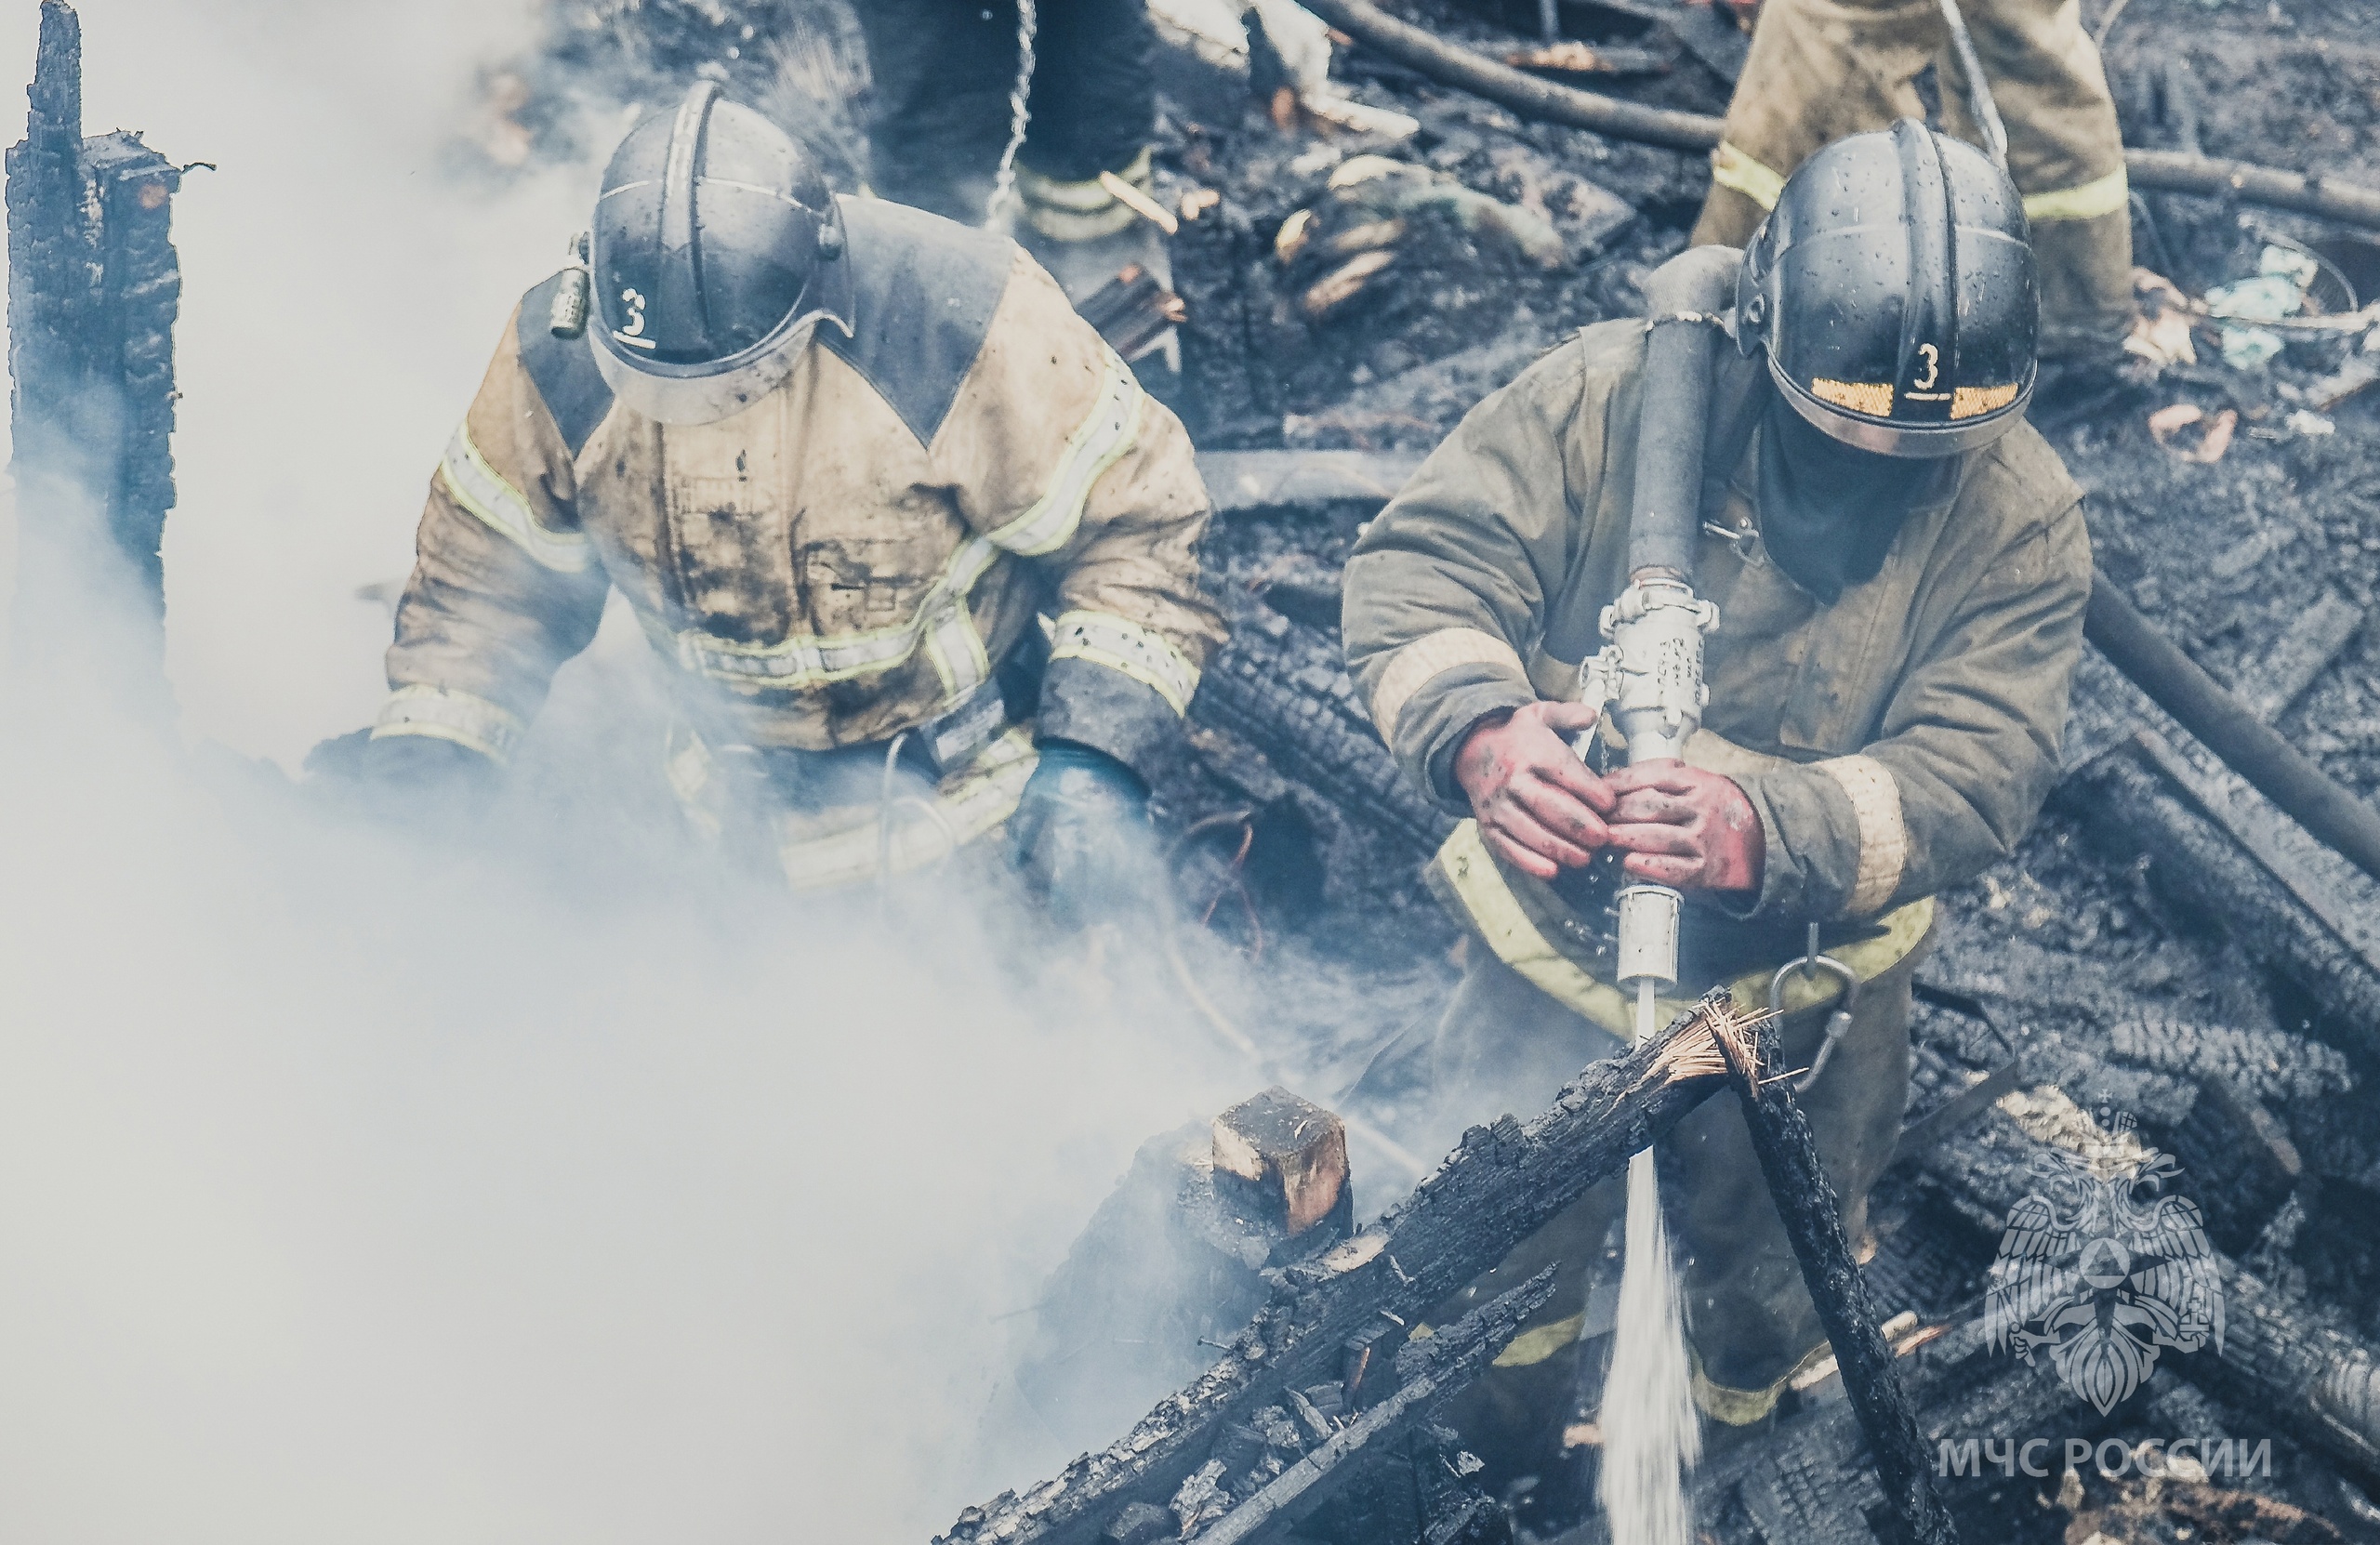 Сразу три пожара случилось в Кемерове в День Победы